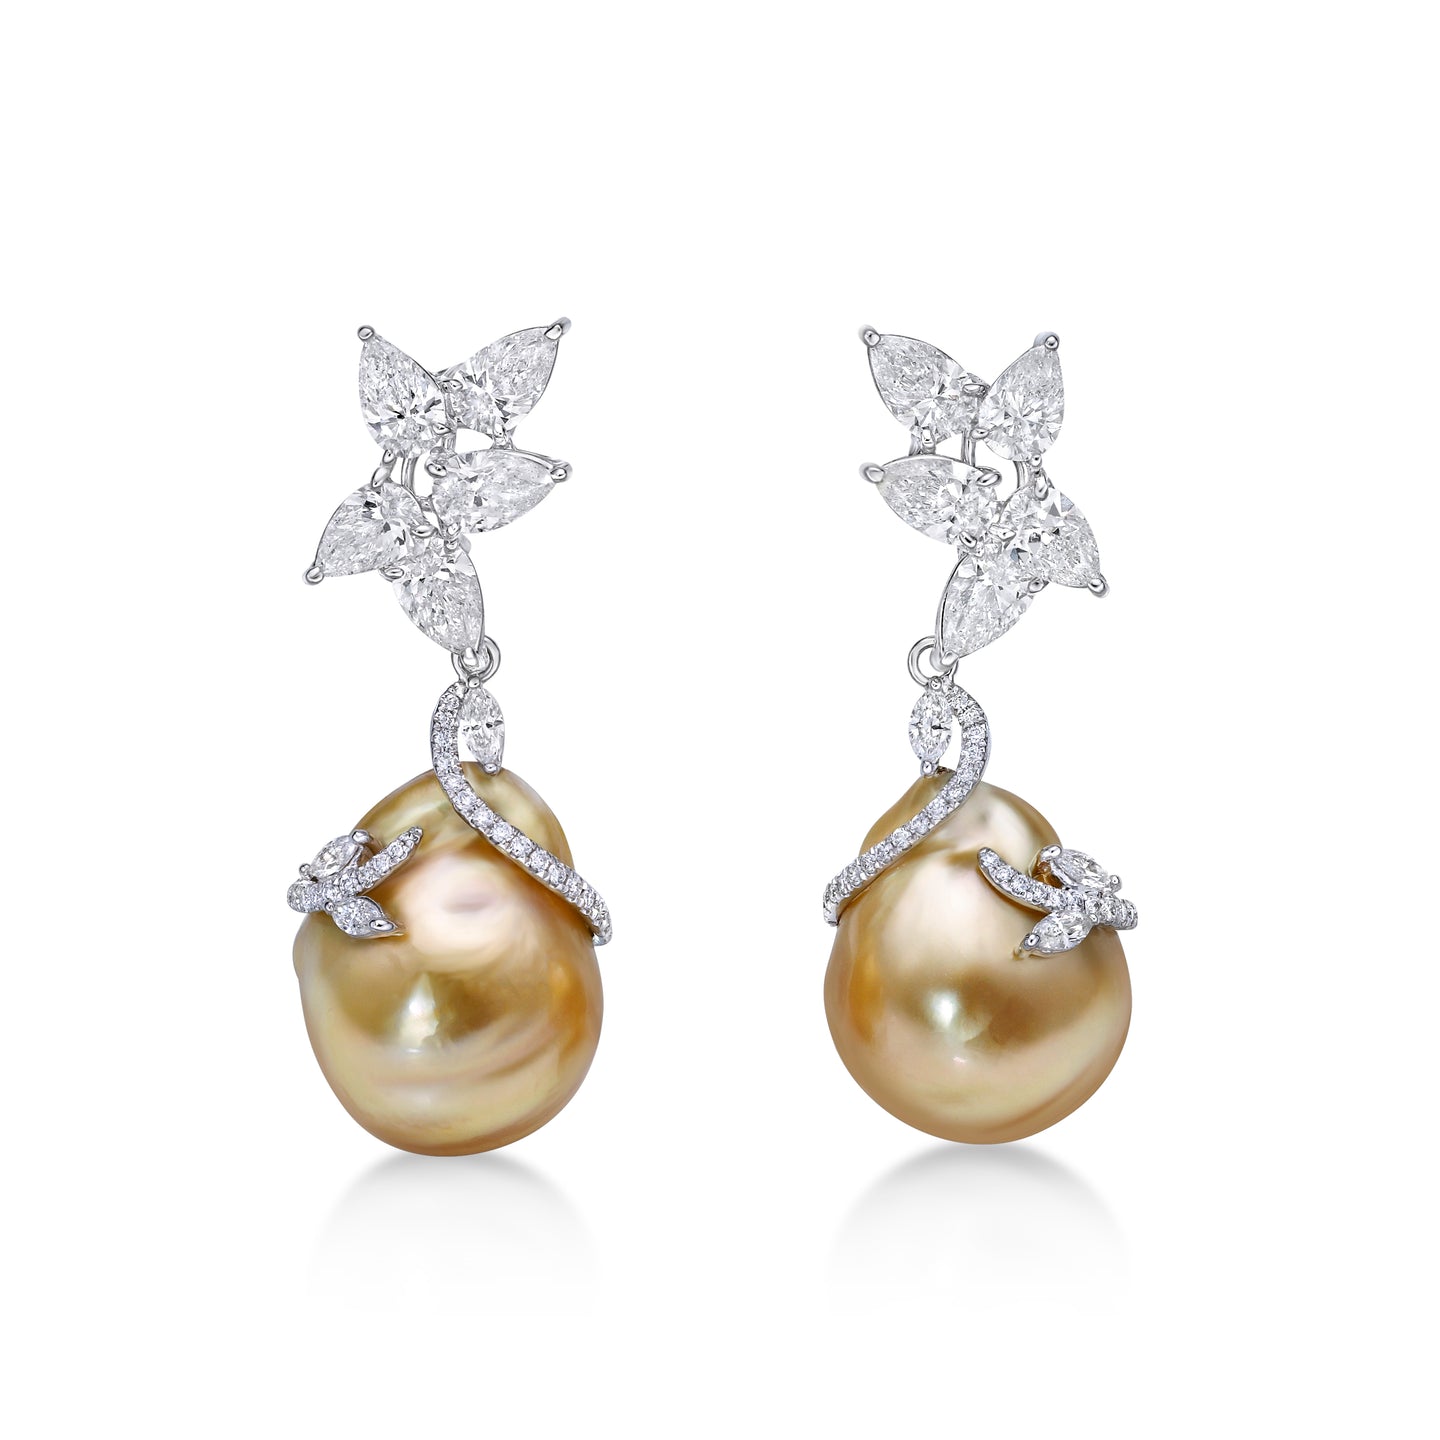 Detachable Golden South Sea Pearl Earrings